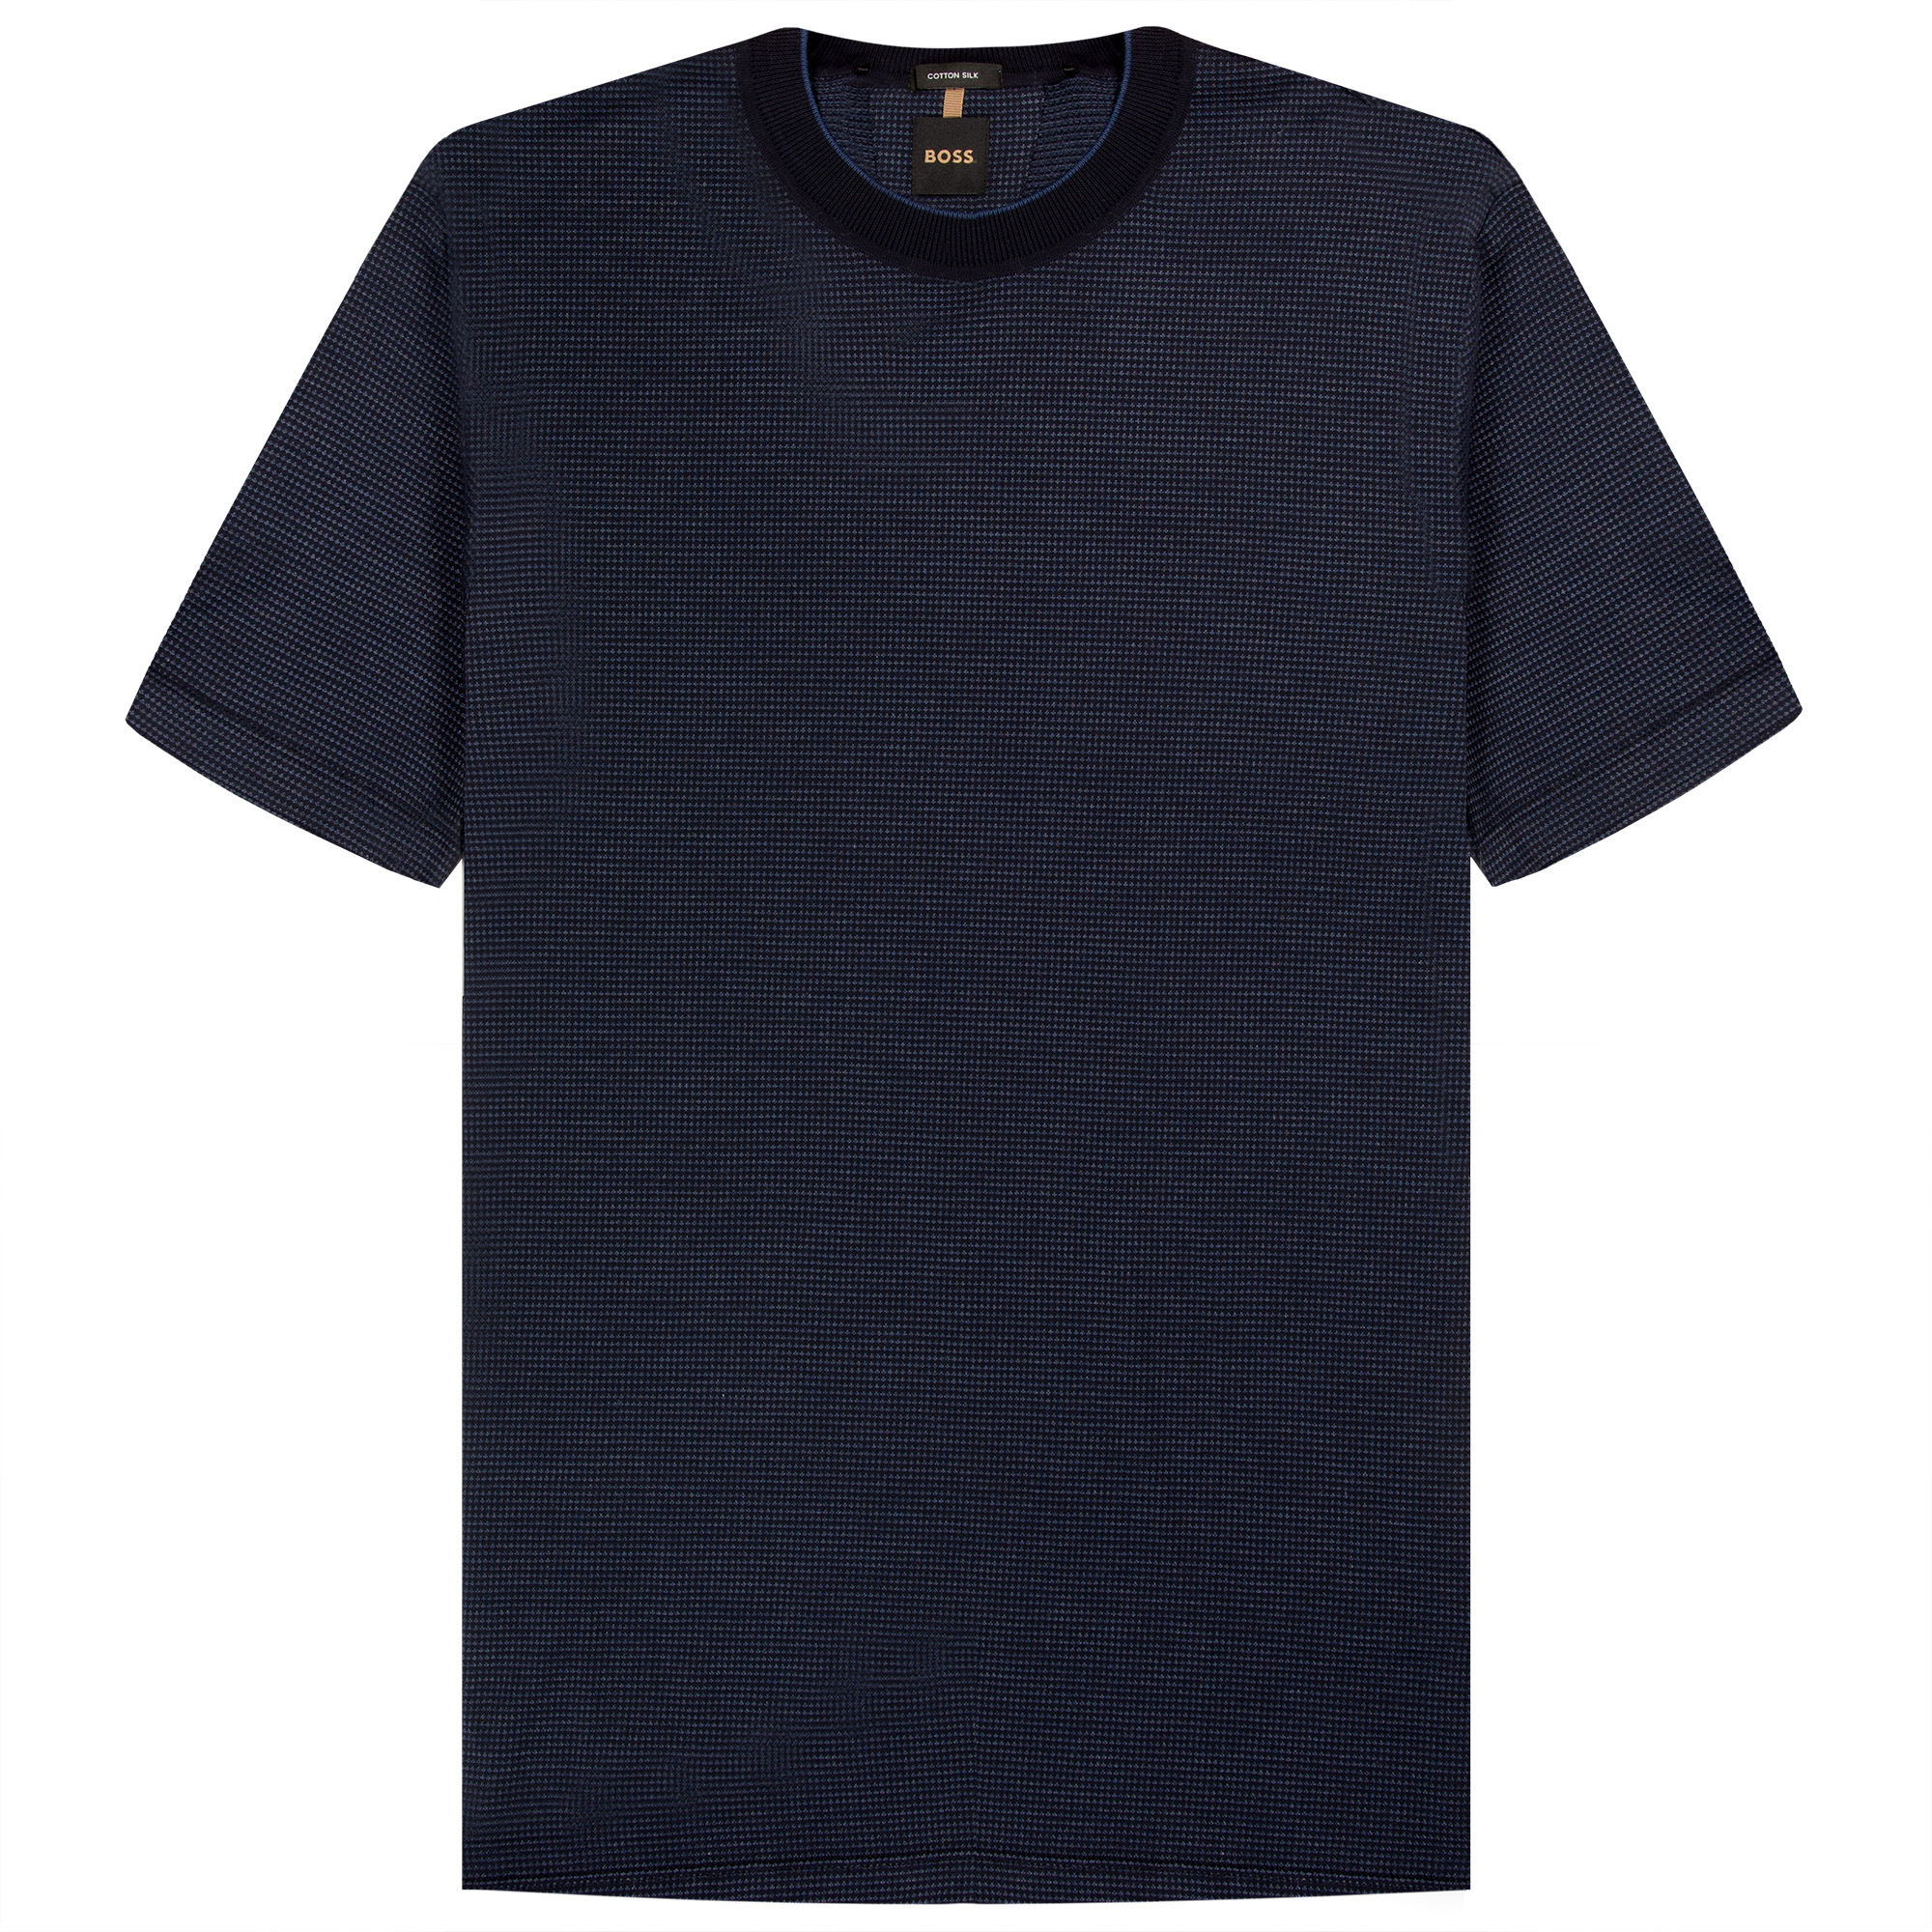 HUGO BOSS T-Tesar 60 Cotton-Silk Woven Structure T-Shirt Dark Blue